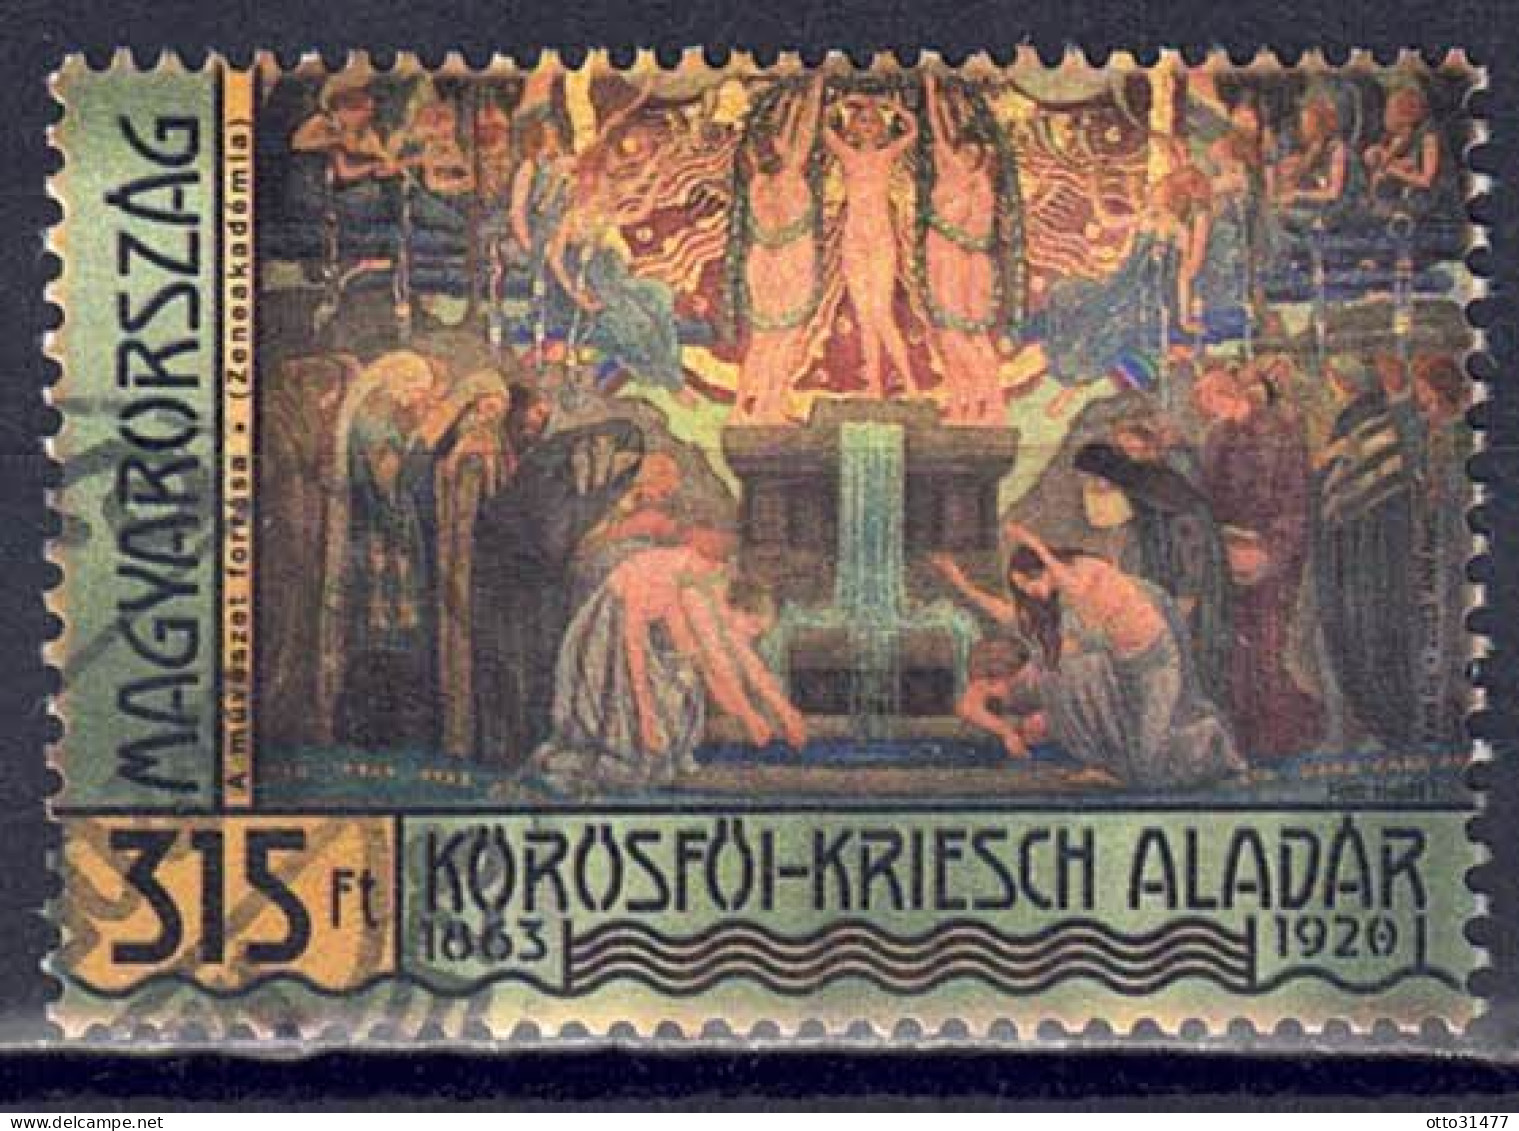 Ungarn 2013 - Aladár Körösföi-Kriesch, Nr. 5657, Gestempelt / Used - Gebruikt